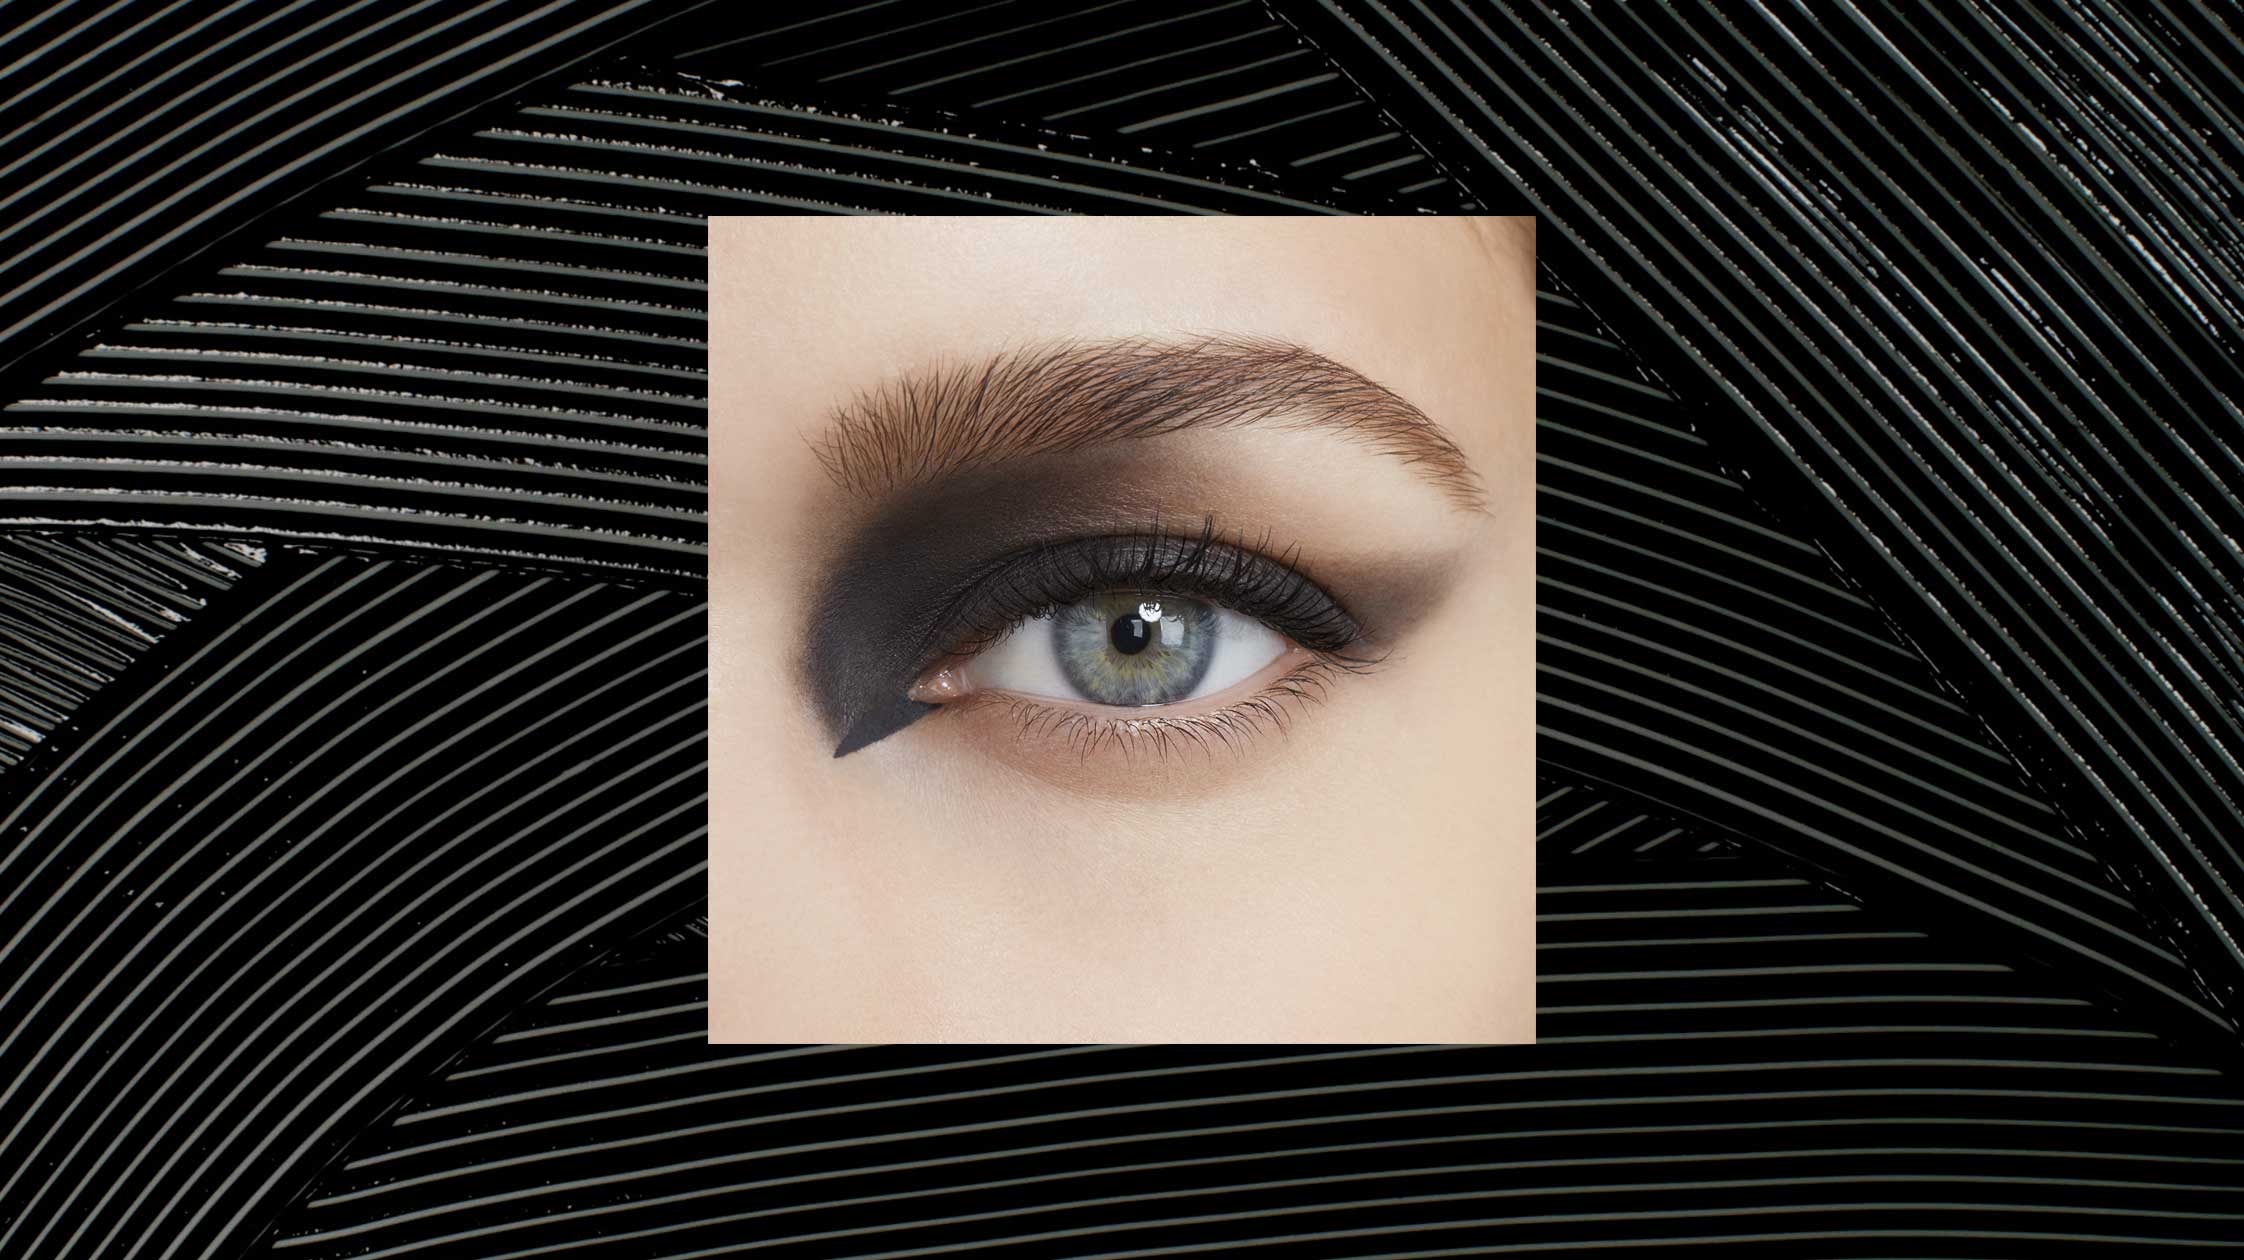 à¸à¸¥à¸à¸²à¸£à¸à¹à¸à¸«à¸²à¸£à¸¹à¸à¸�à¸²à¸à¸ªà¸³à¸«à¸£à¸±à¸ Givenchy Eye Collection Travel Makeup Palette